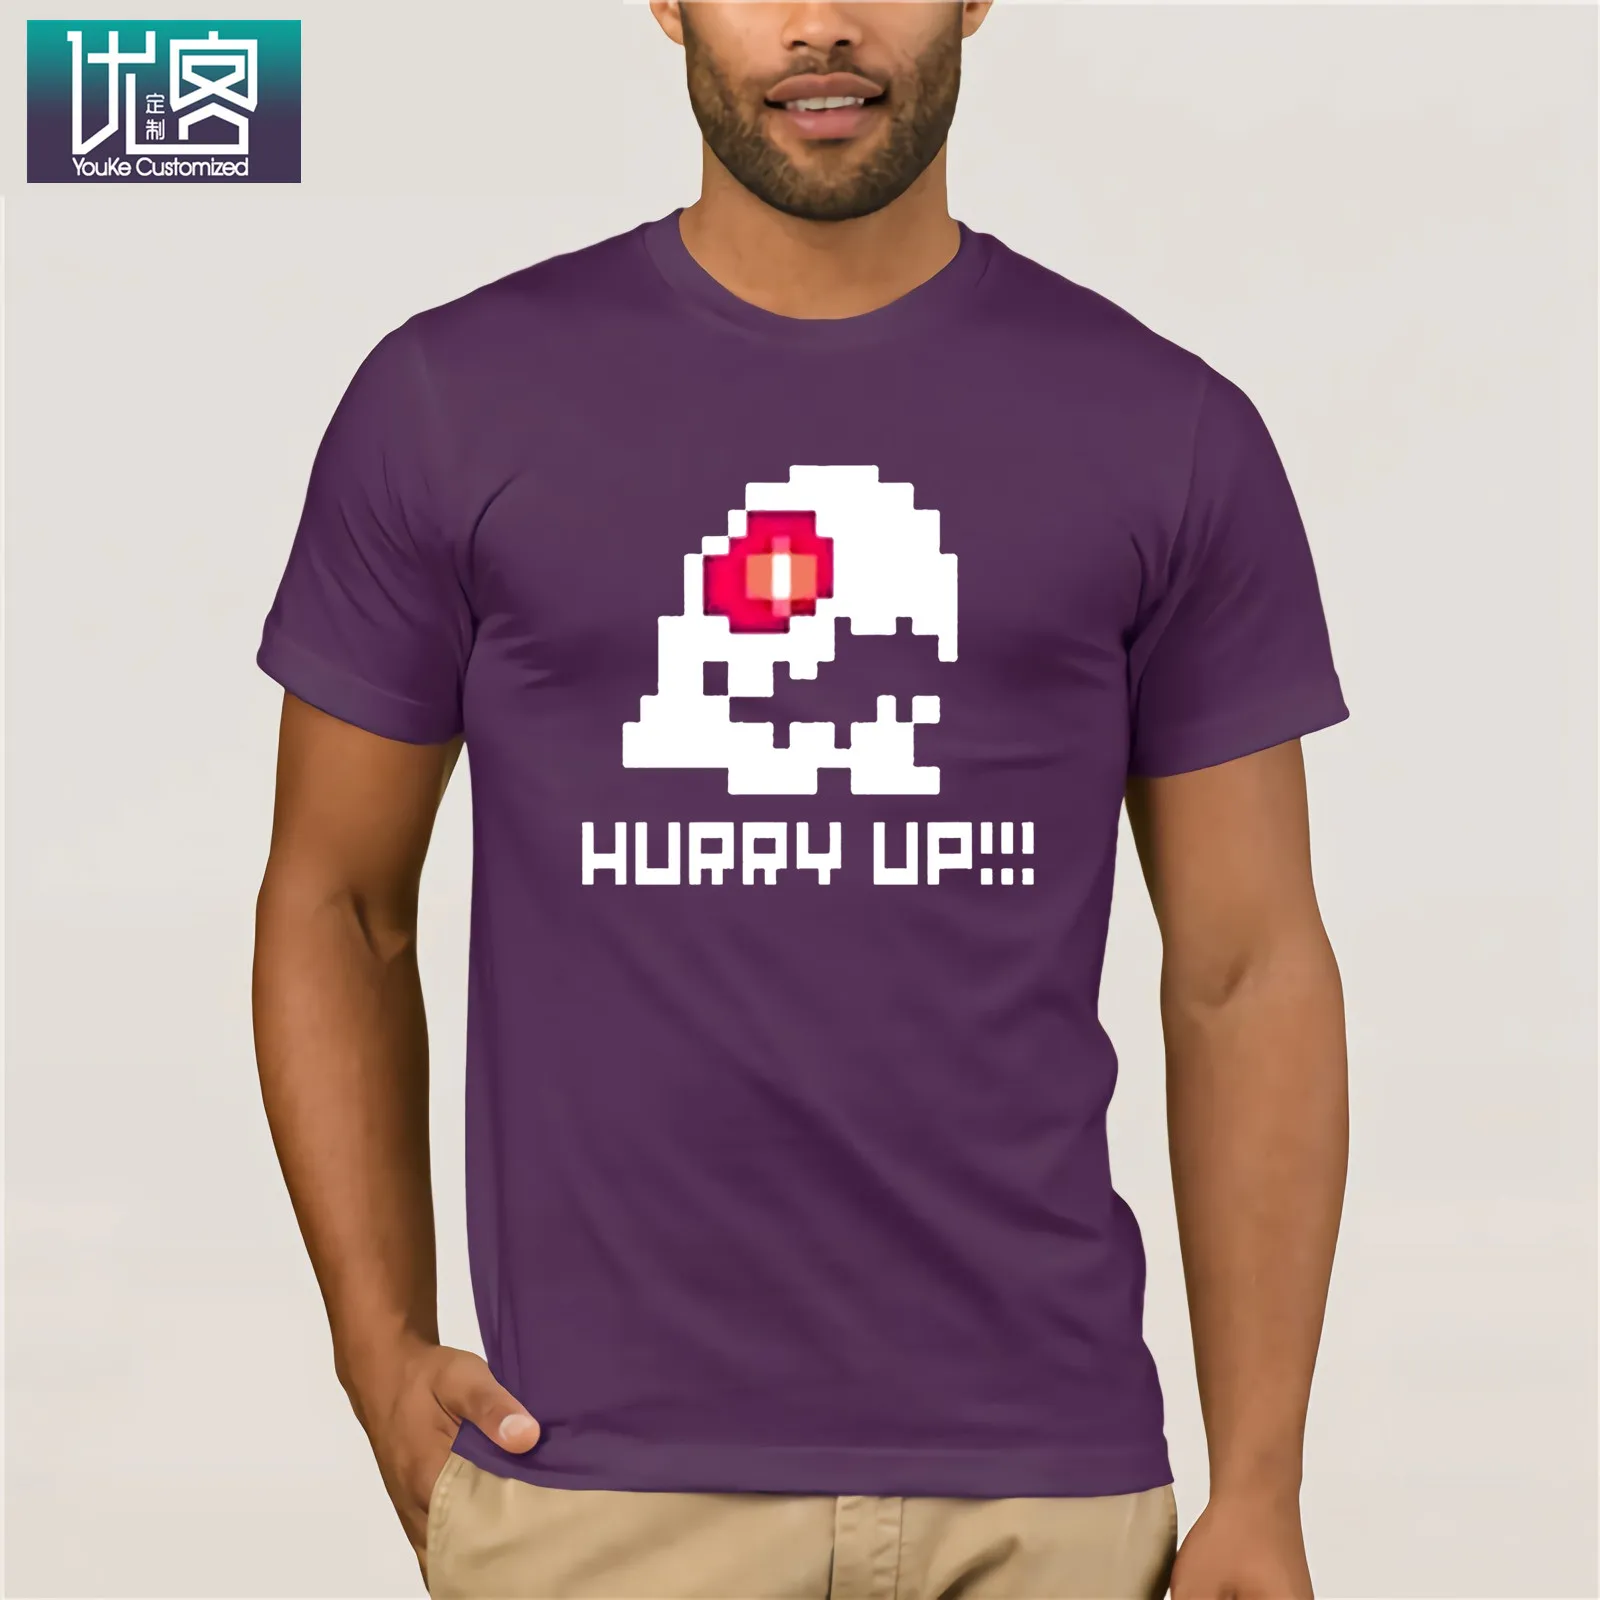 Bubble Bobble Hurry Up, забавная футболка с видеоиграми, хлопок, мужская и женская футболка, мужские футболки, летняя стильная Винтажная футболка с вырезом лодочкой